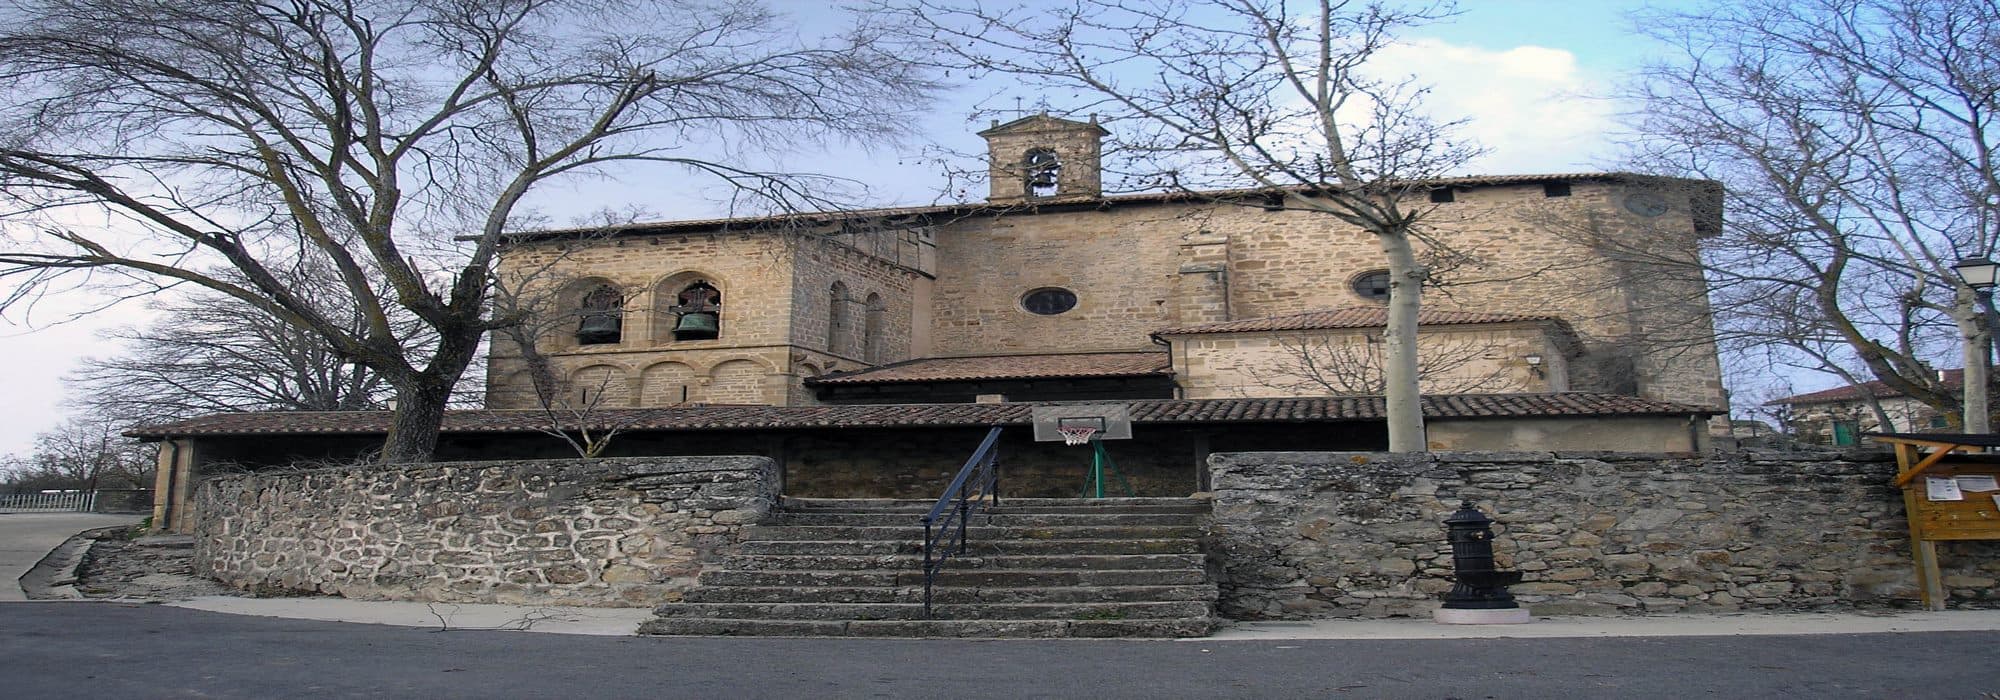 7. Ayuntamiento de Asparrena